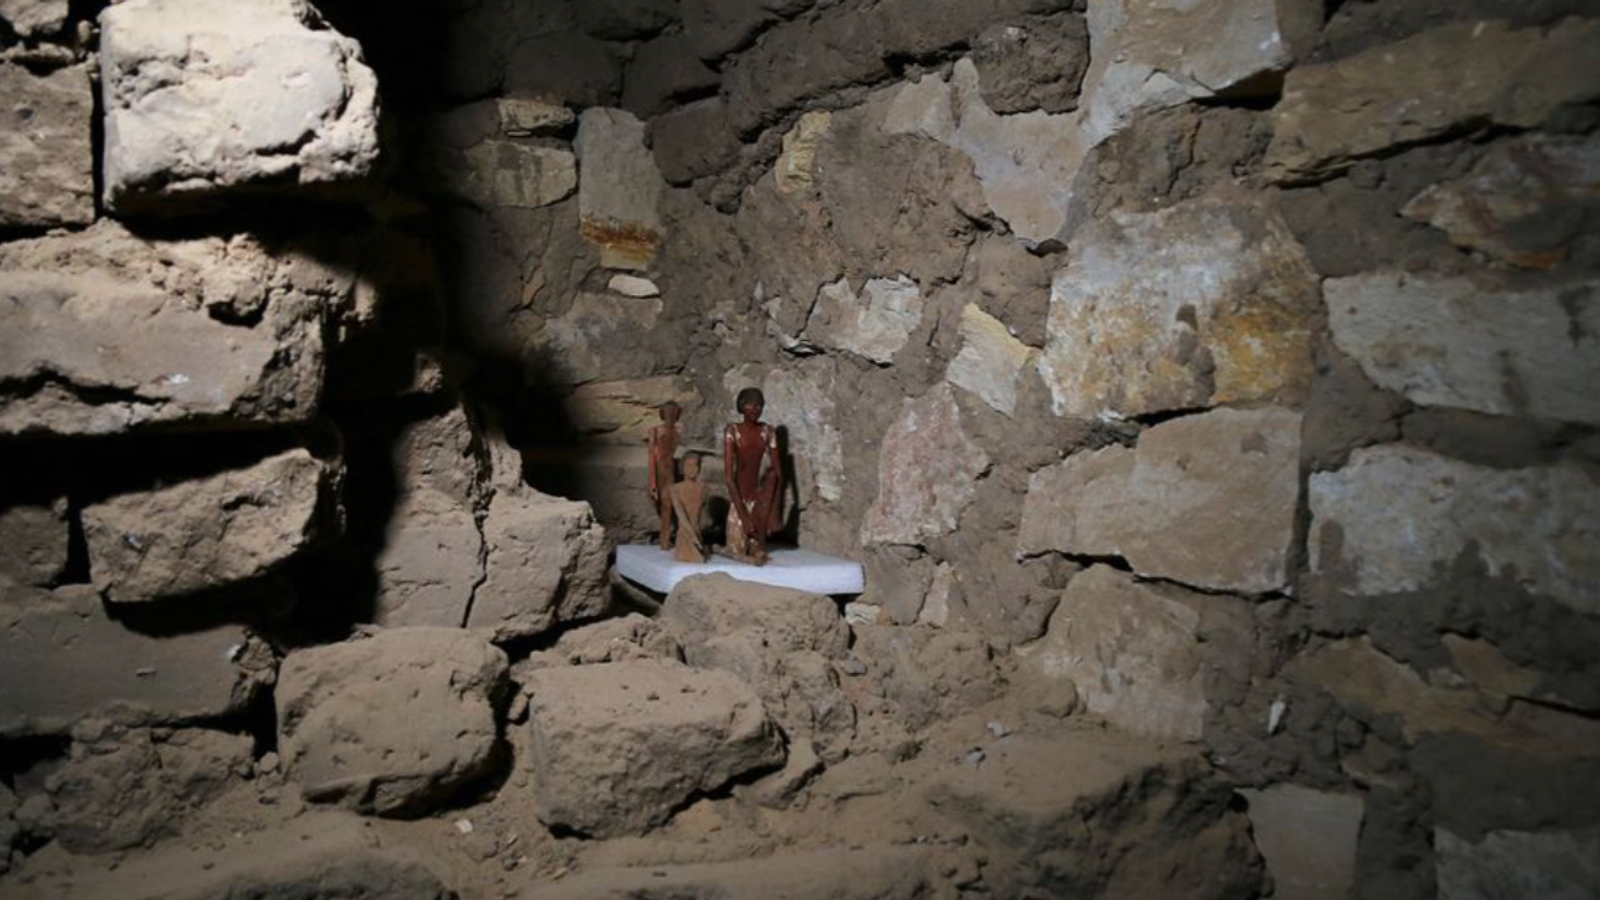 مصر: علماء الآثار يعثرون على خمسة مقابر قديمة مزينة بلوحات في مقبرة بالقرب من القاهرة |  اخبار العالم